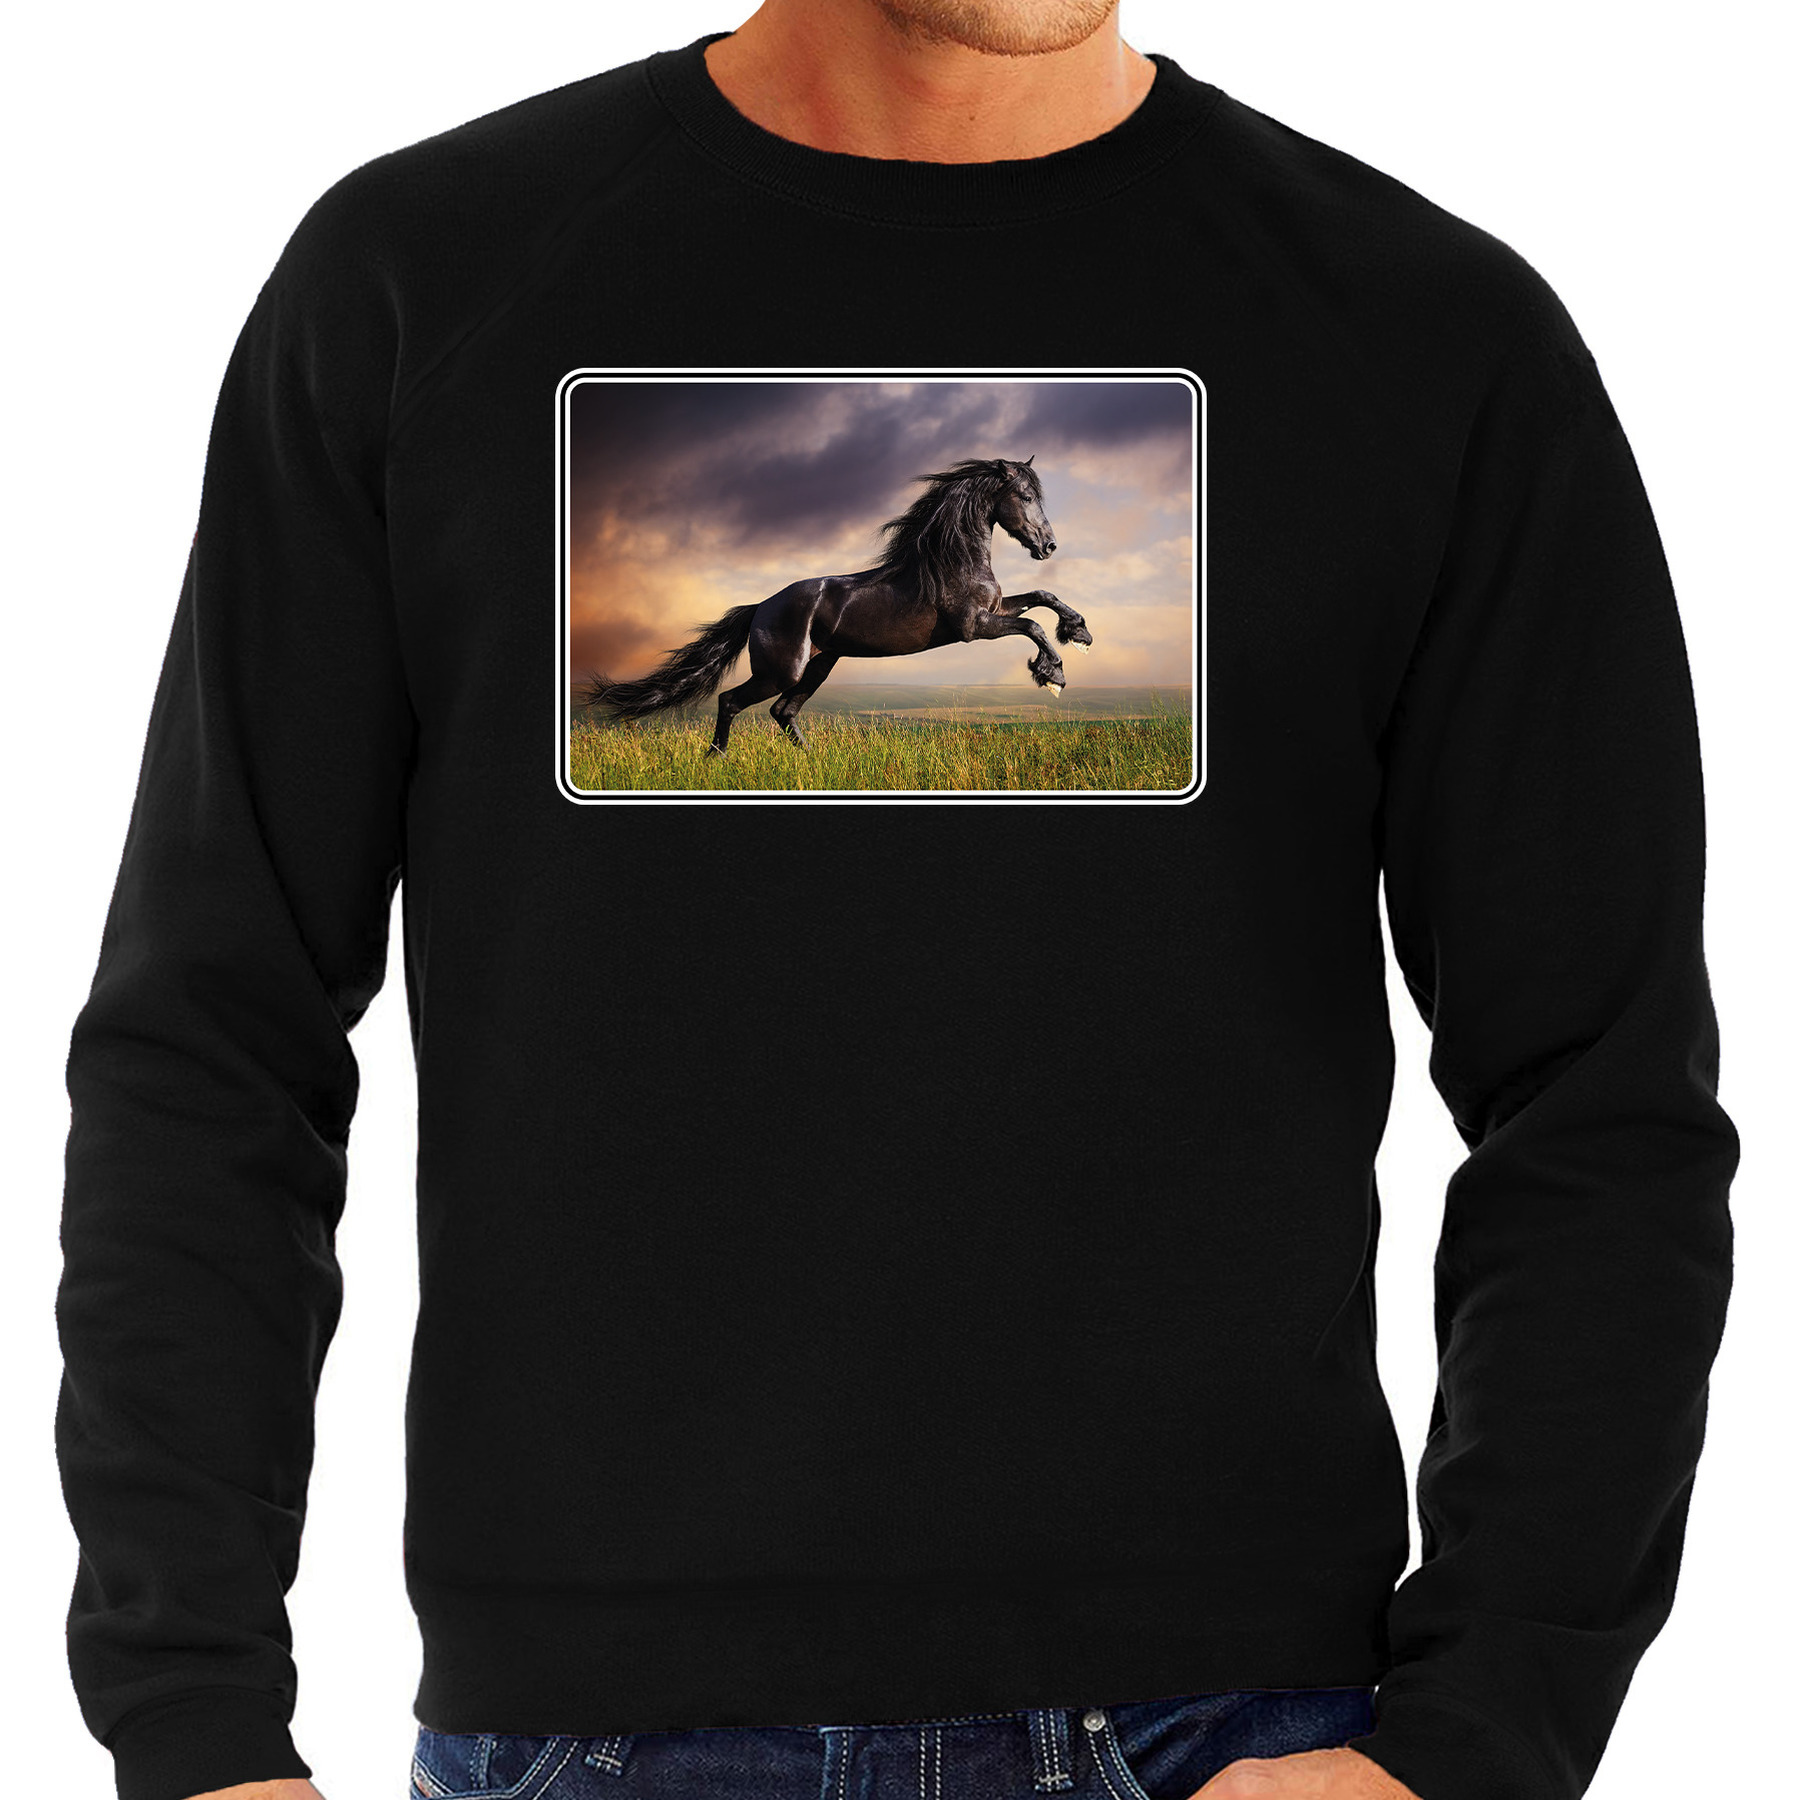 Dieren sweater met paarden foto zwart voor heren paard cadeau trui